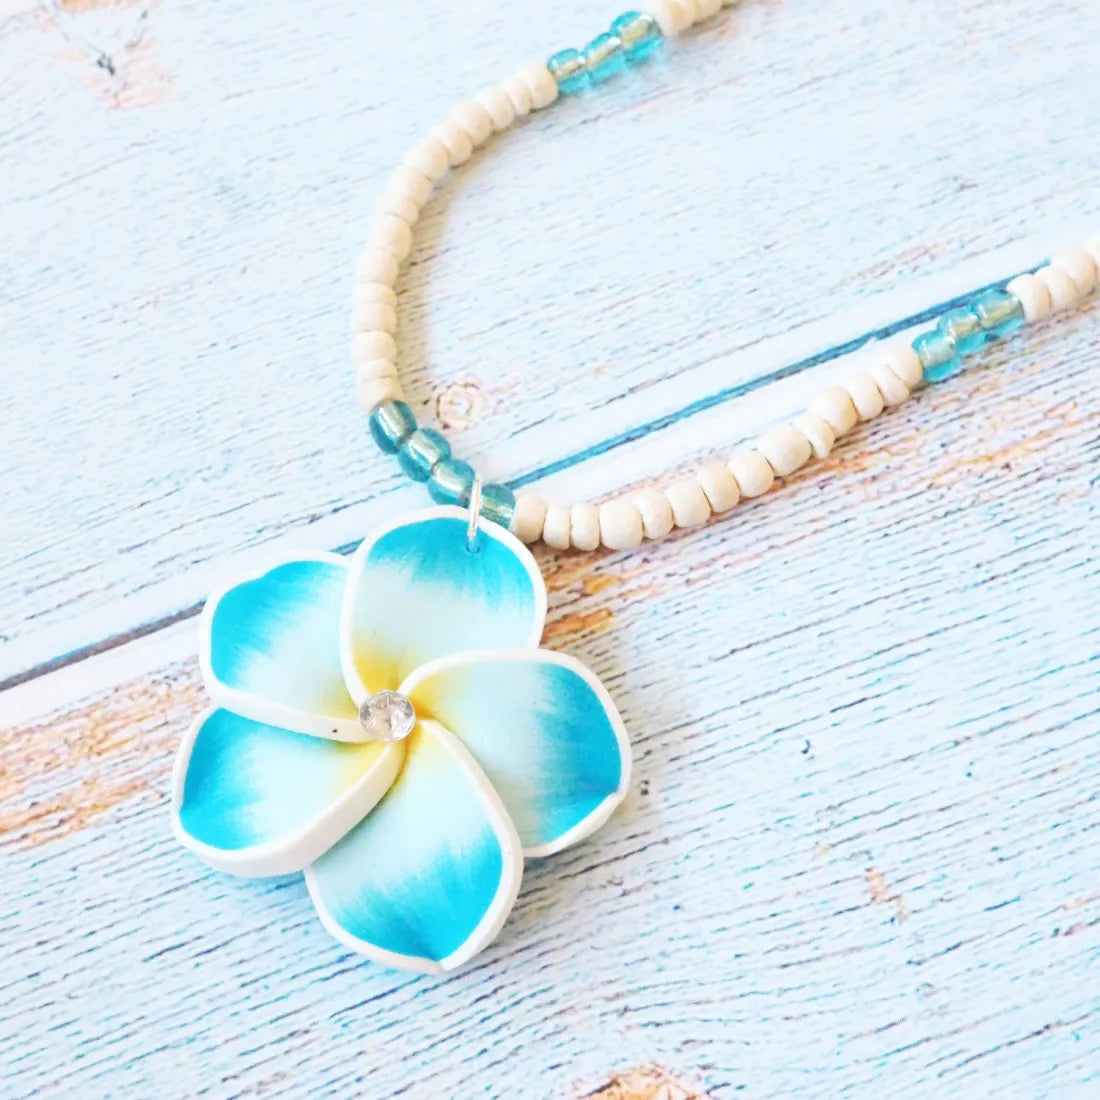 Jazzy Plumeria Aqua Pendant Hawaiian Necklace - Made In Hawaii